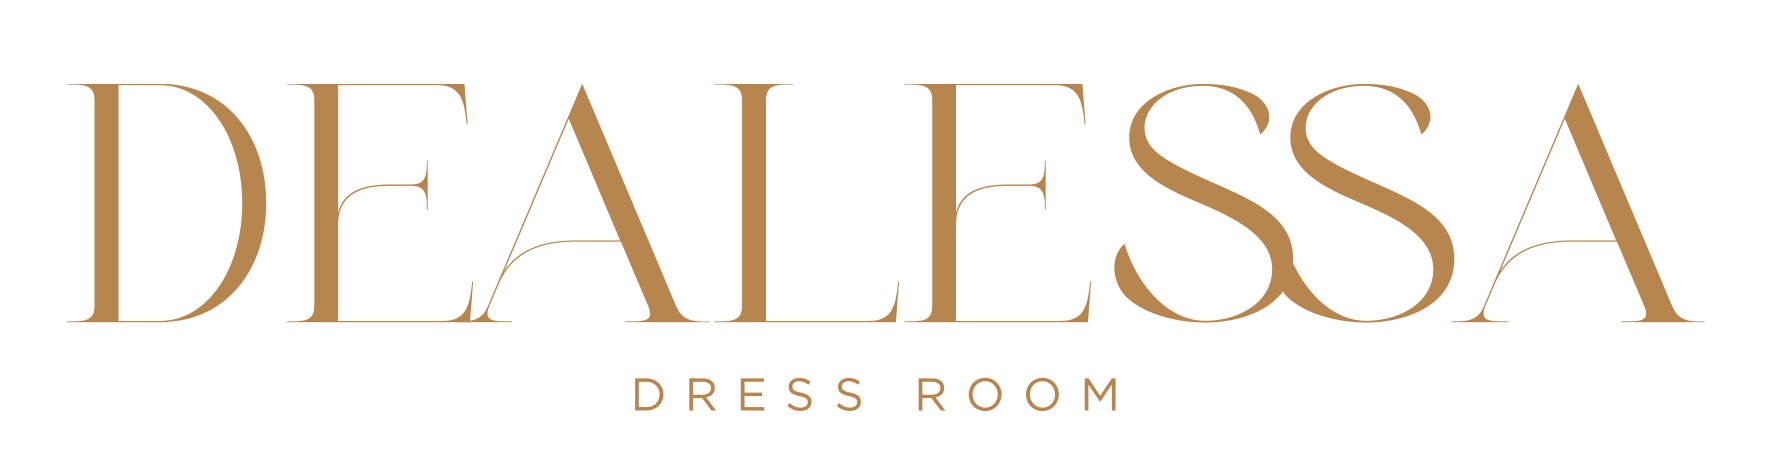 Dealessa Dress Room